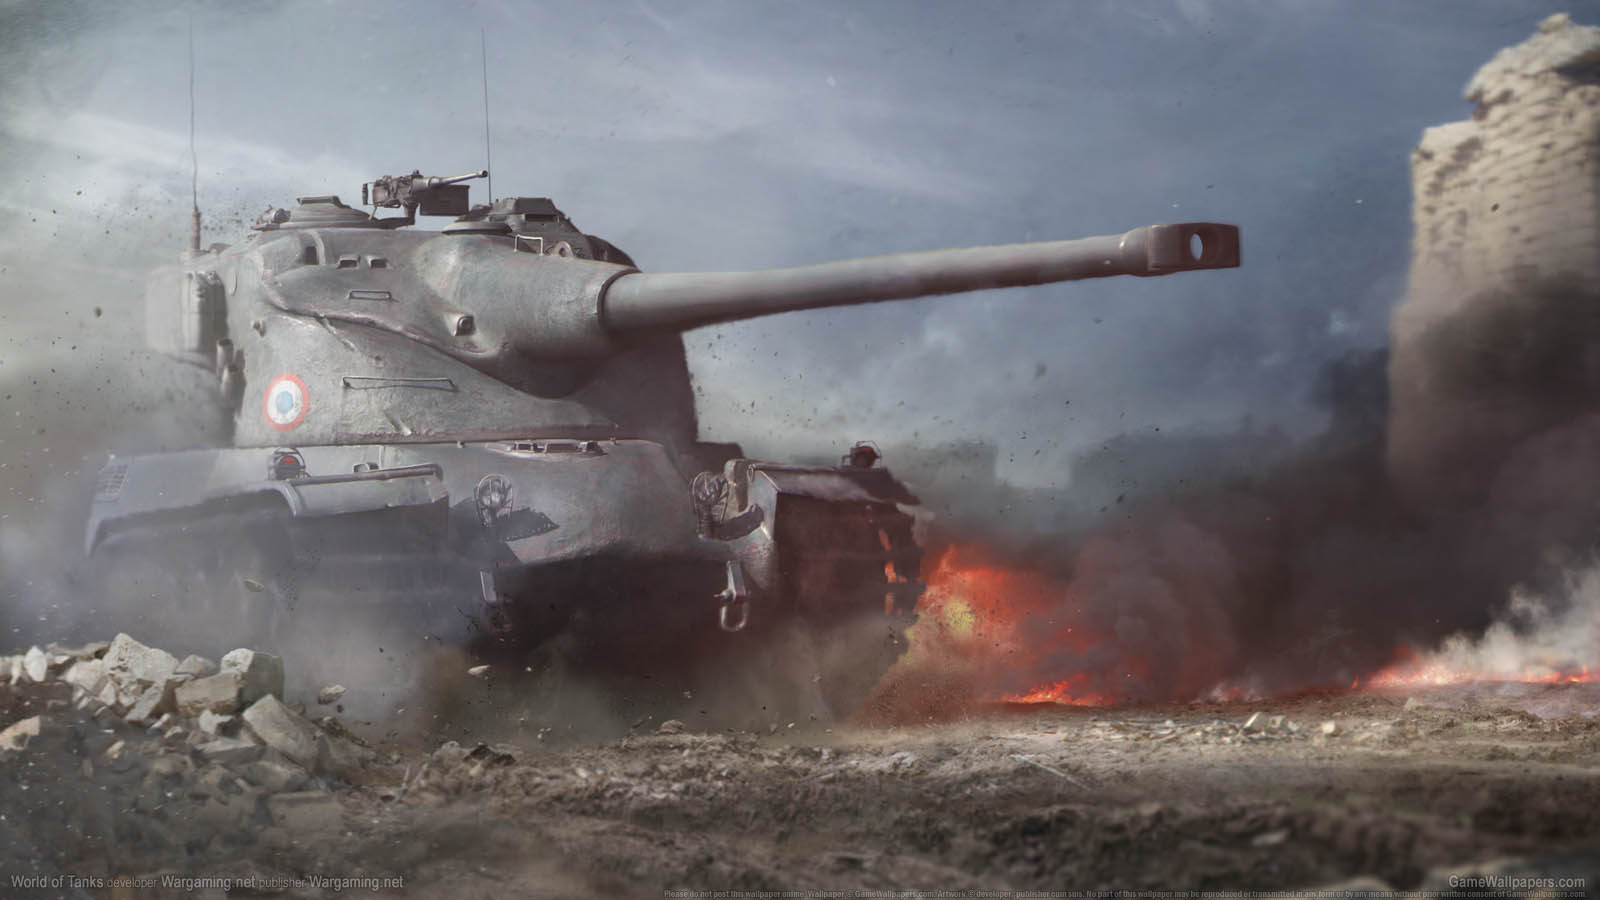 World of Tanks fond d'cran 16 1600x900